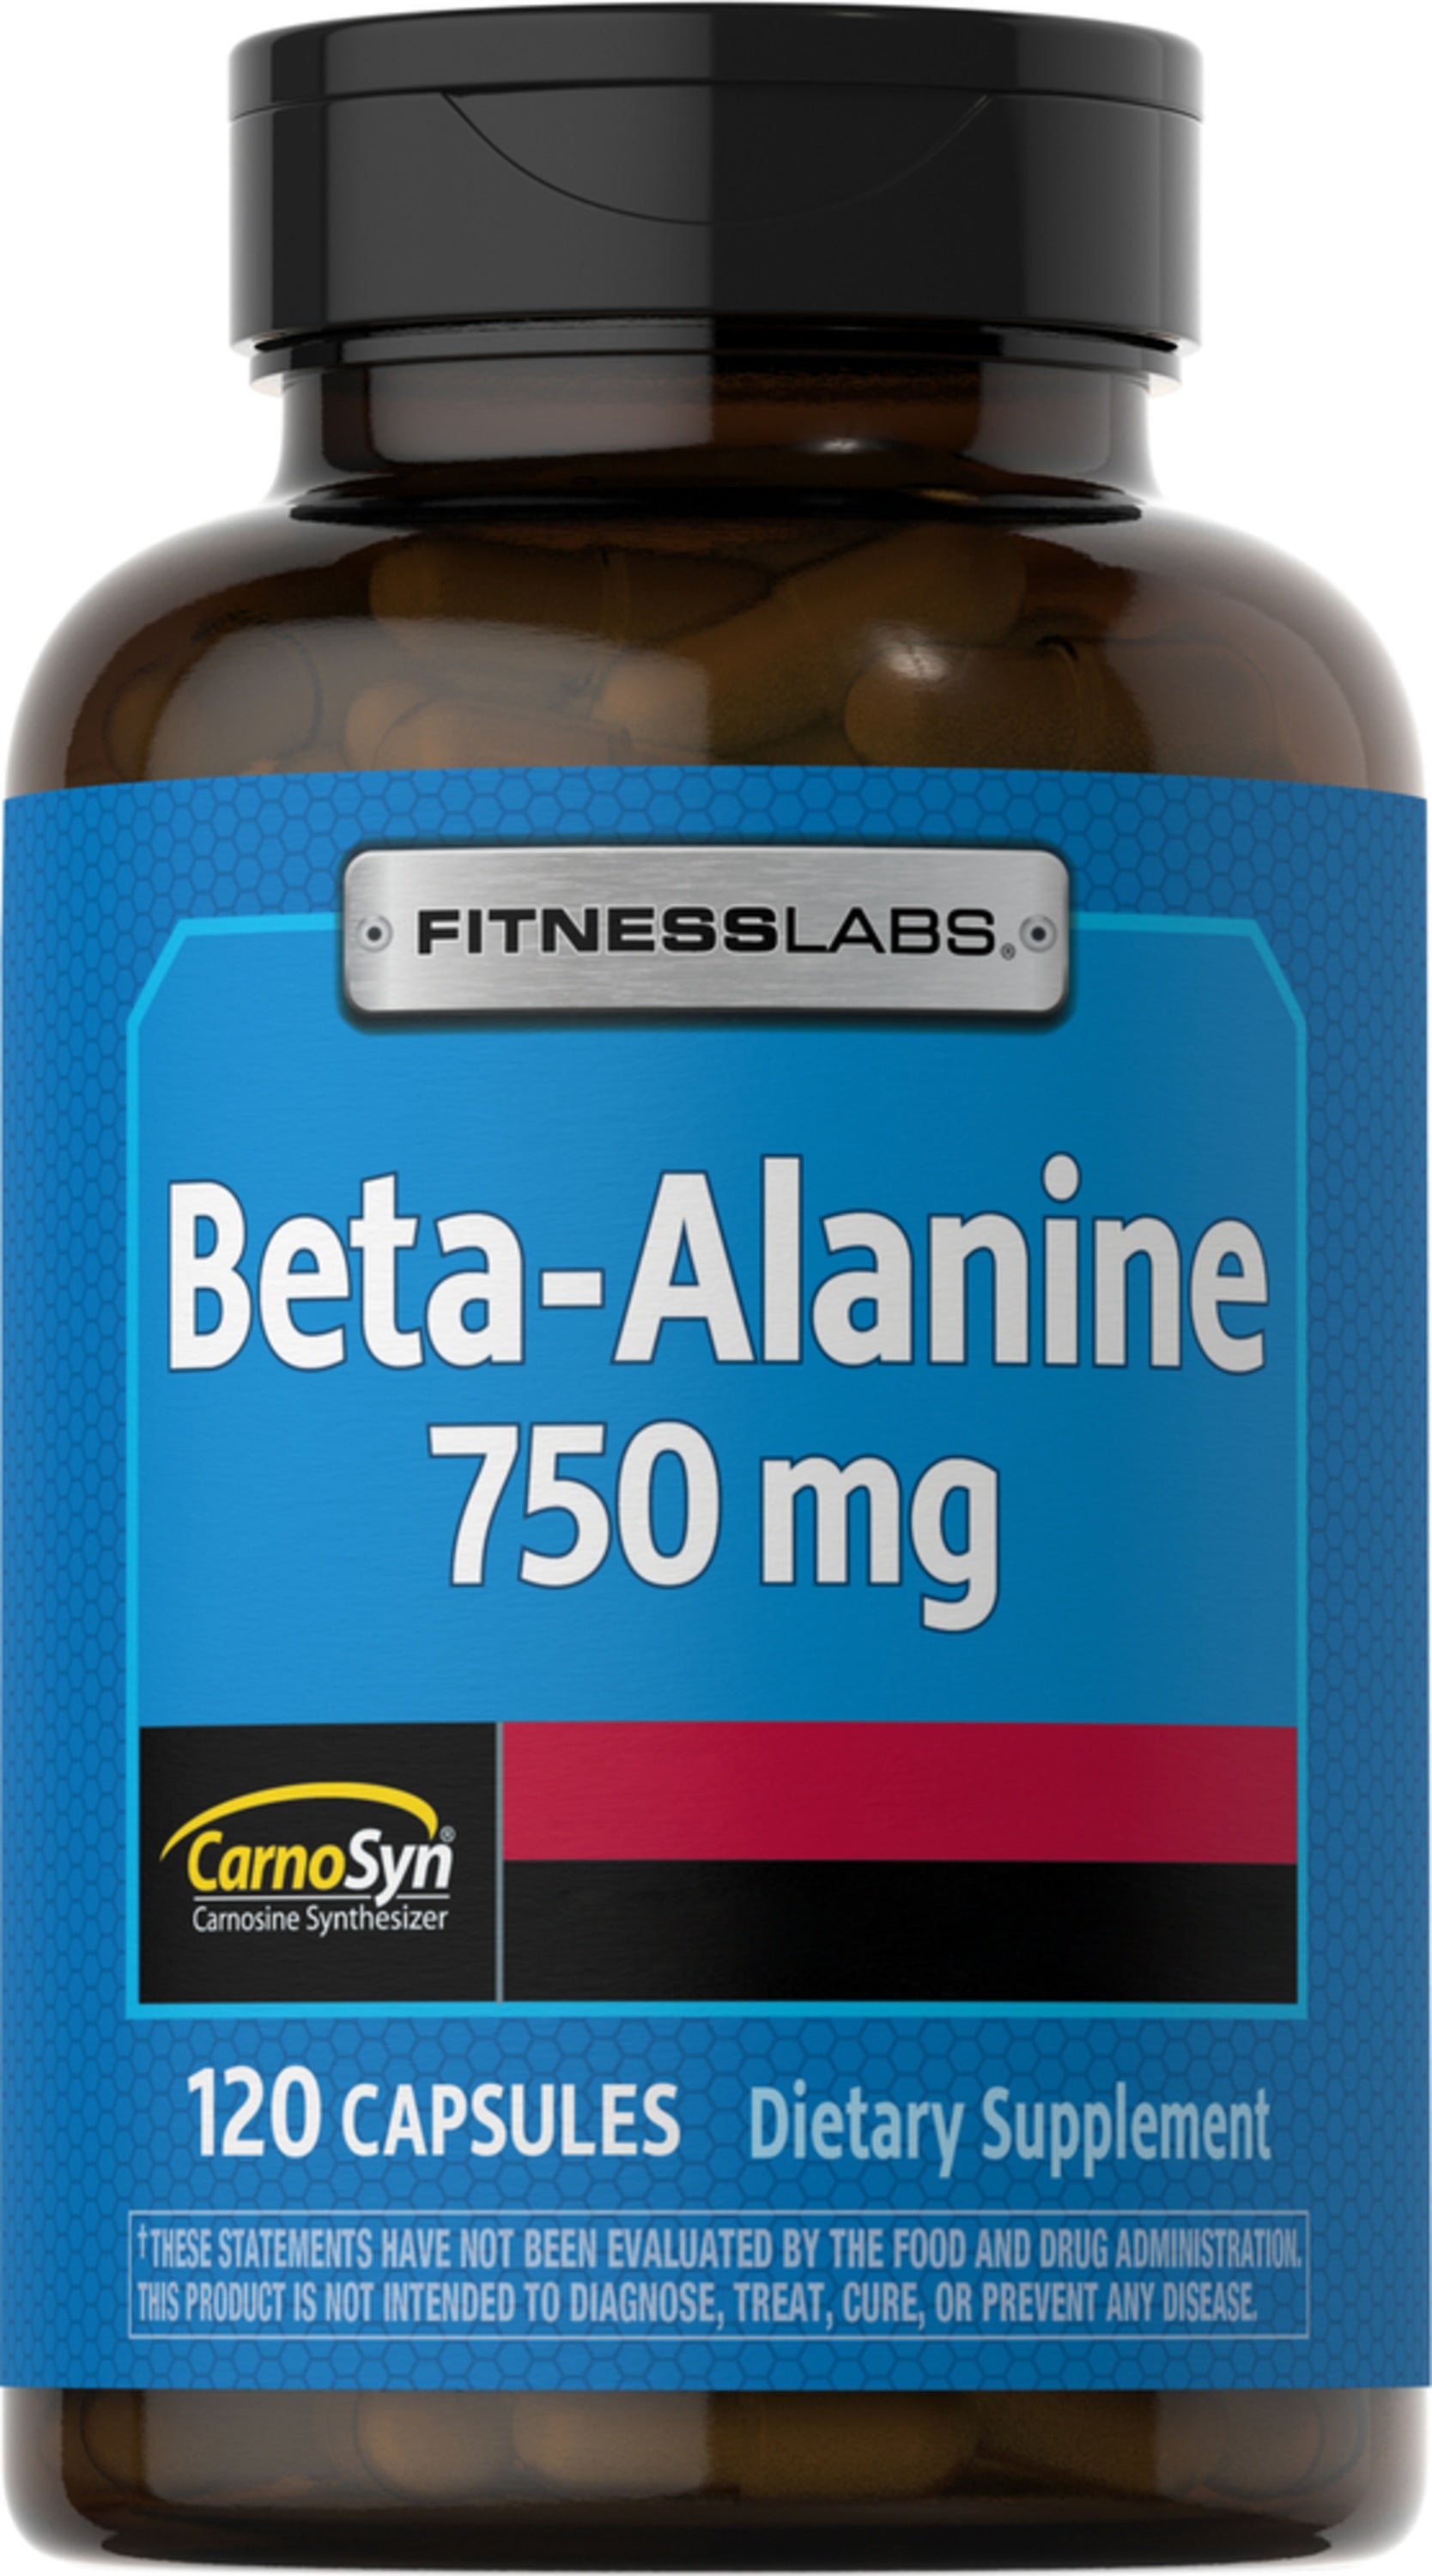 My Supps 100% Beta Alanine - 180 Caps